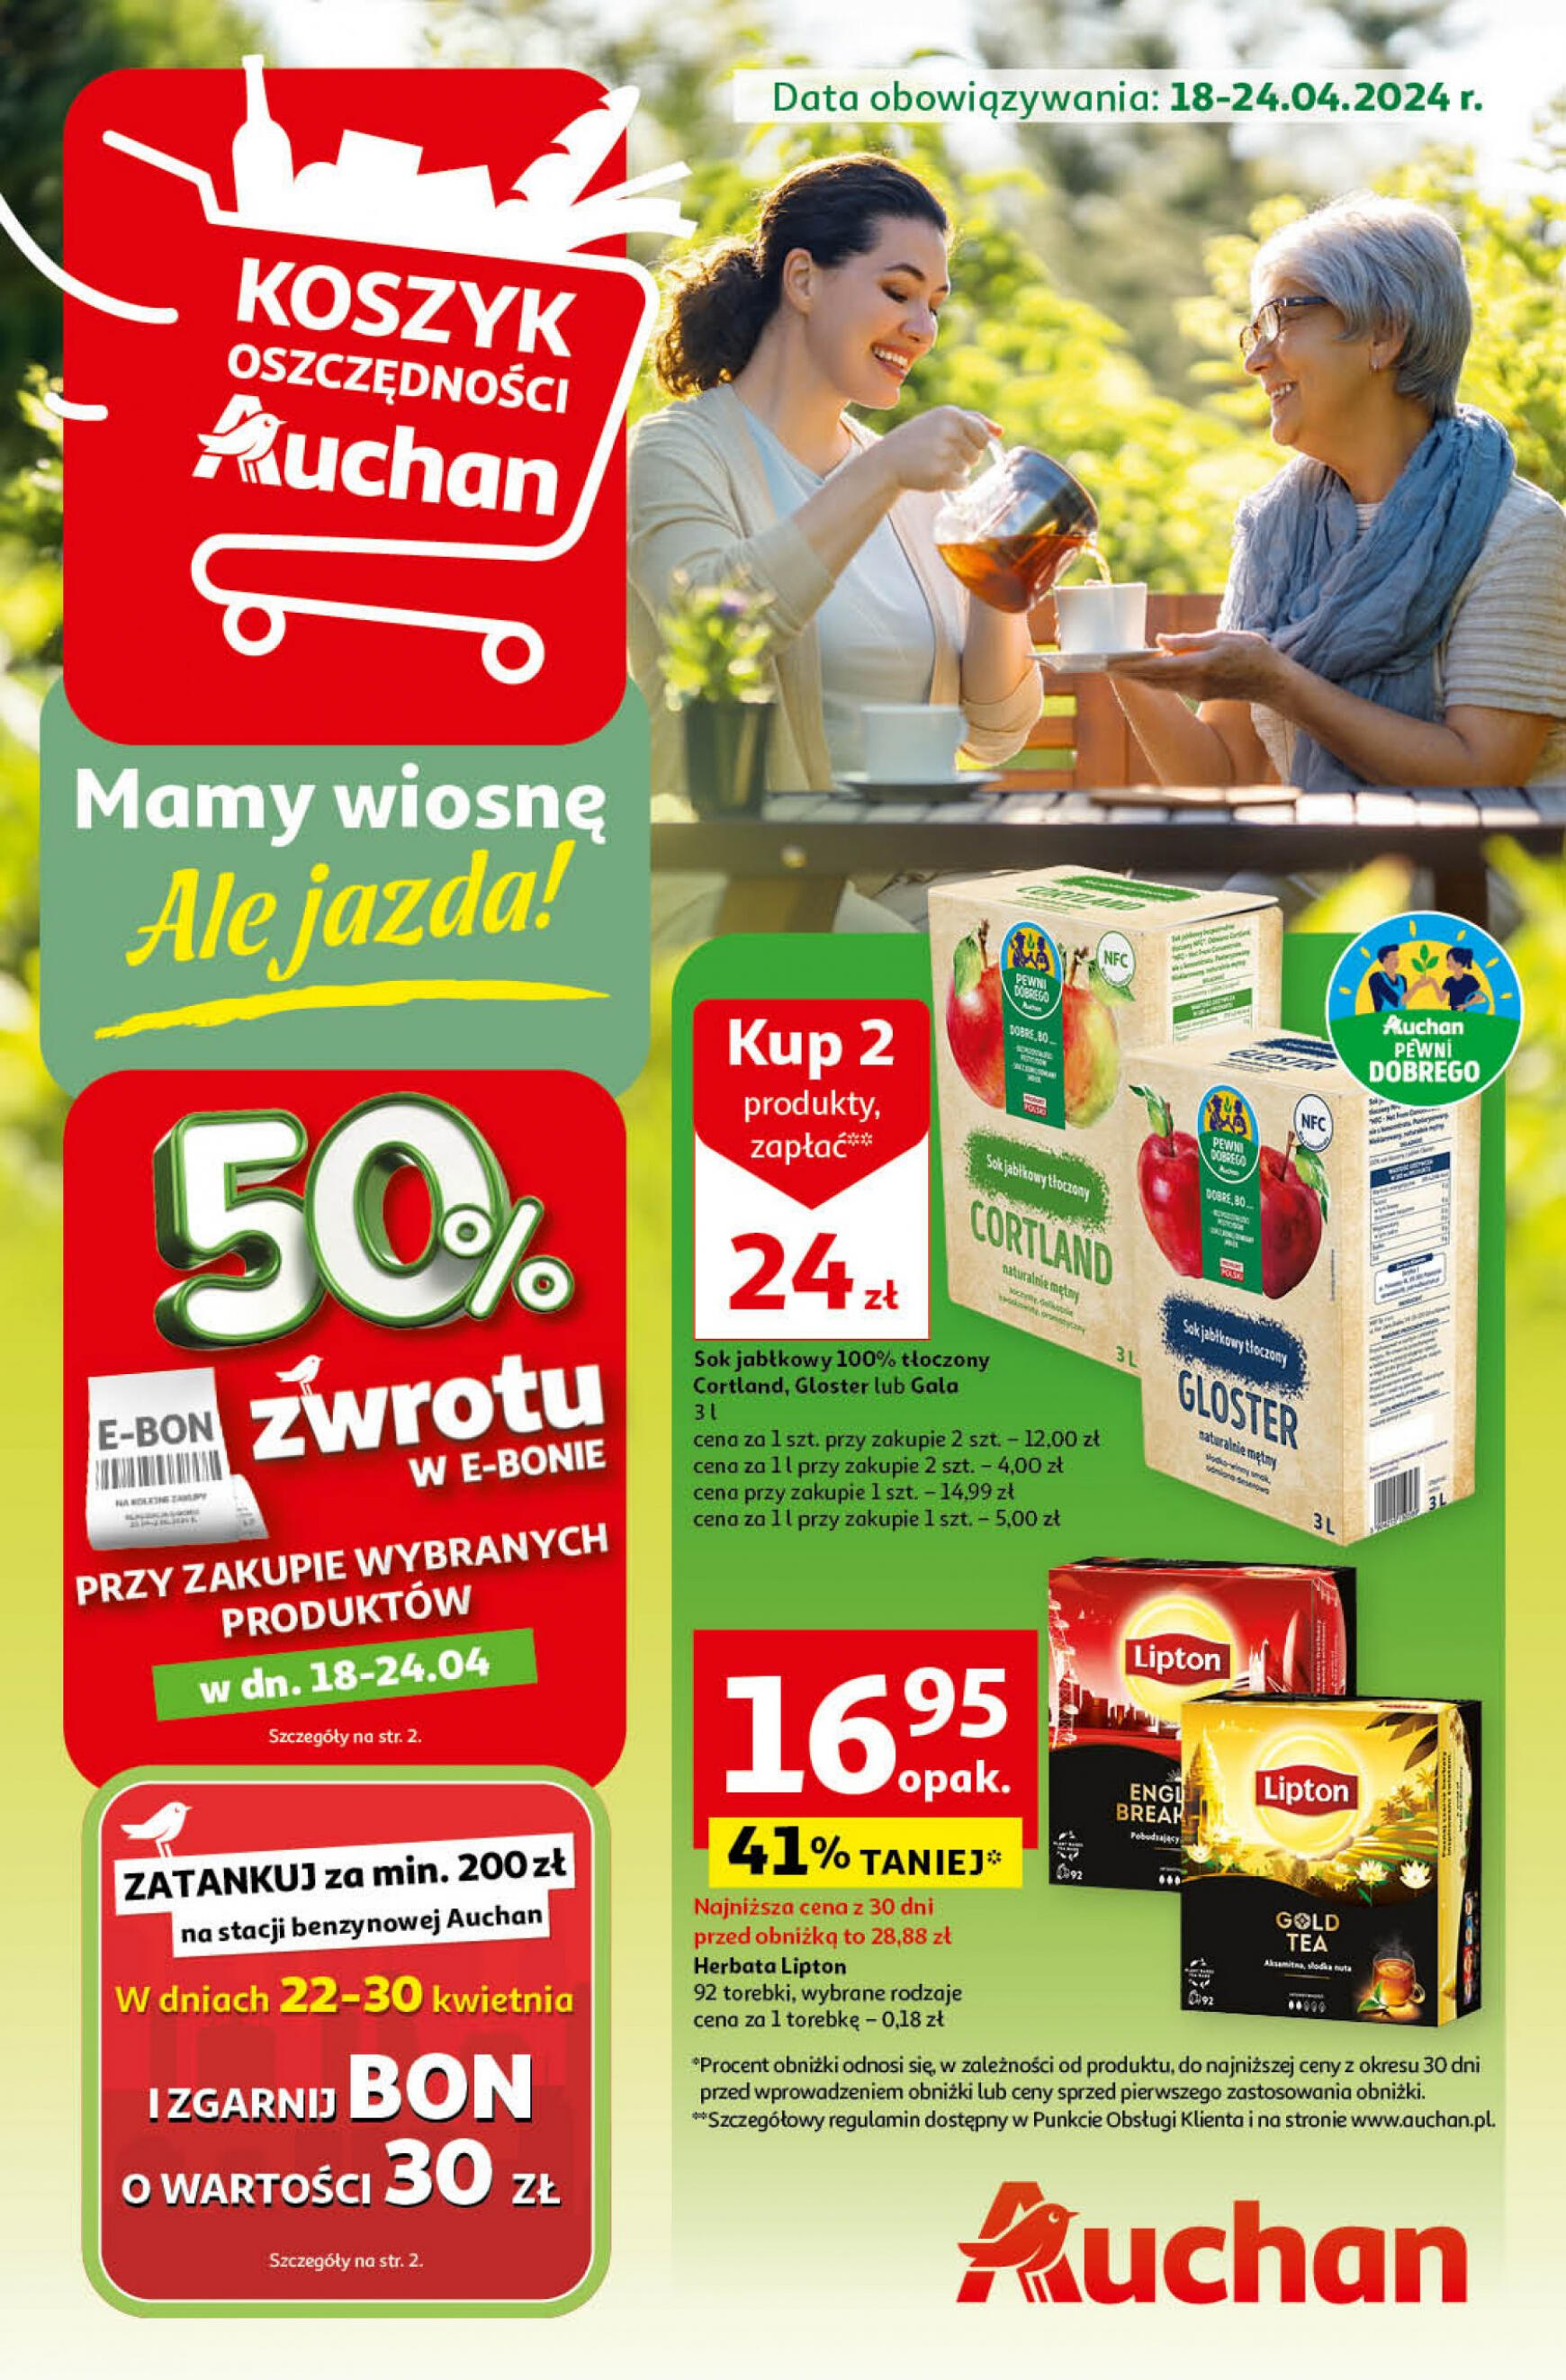 auchan - Hipermarket Auchan - Gazetka Mamy wiosnę Ale jazda! gazetka aktualna ważna od 18.04. - 24.04.